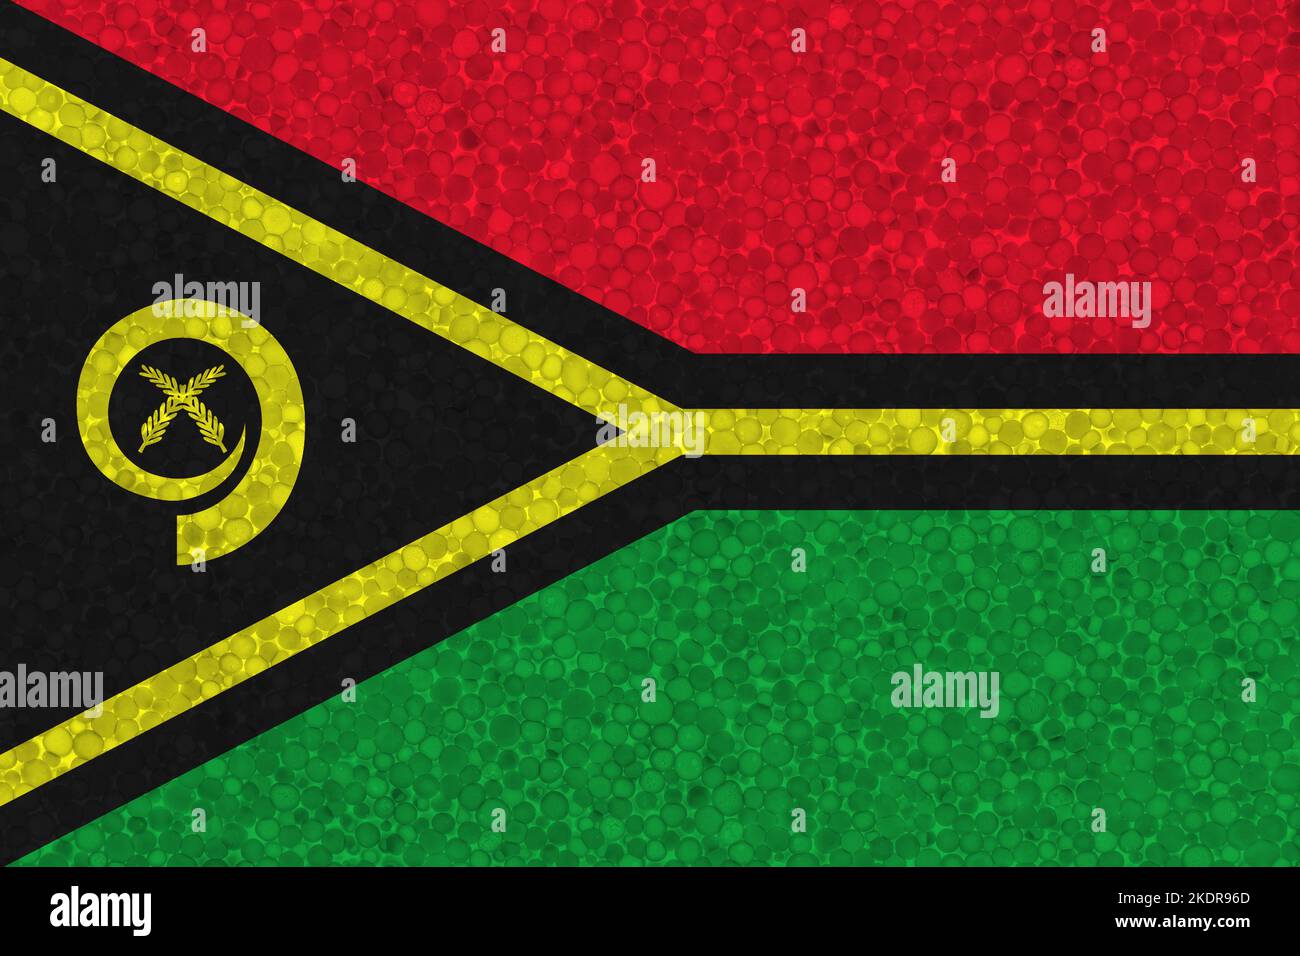 Drapeau de Vanuatu sur la texture de la styromousse. Drapeau national peint sur la surface de la mousse plastique Banque D'Images